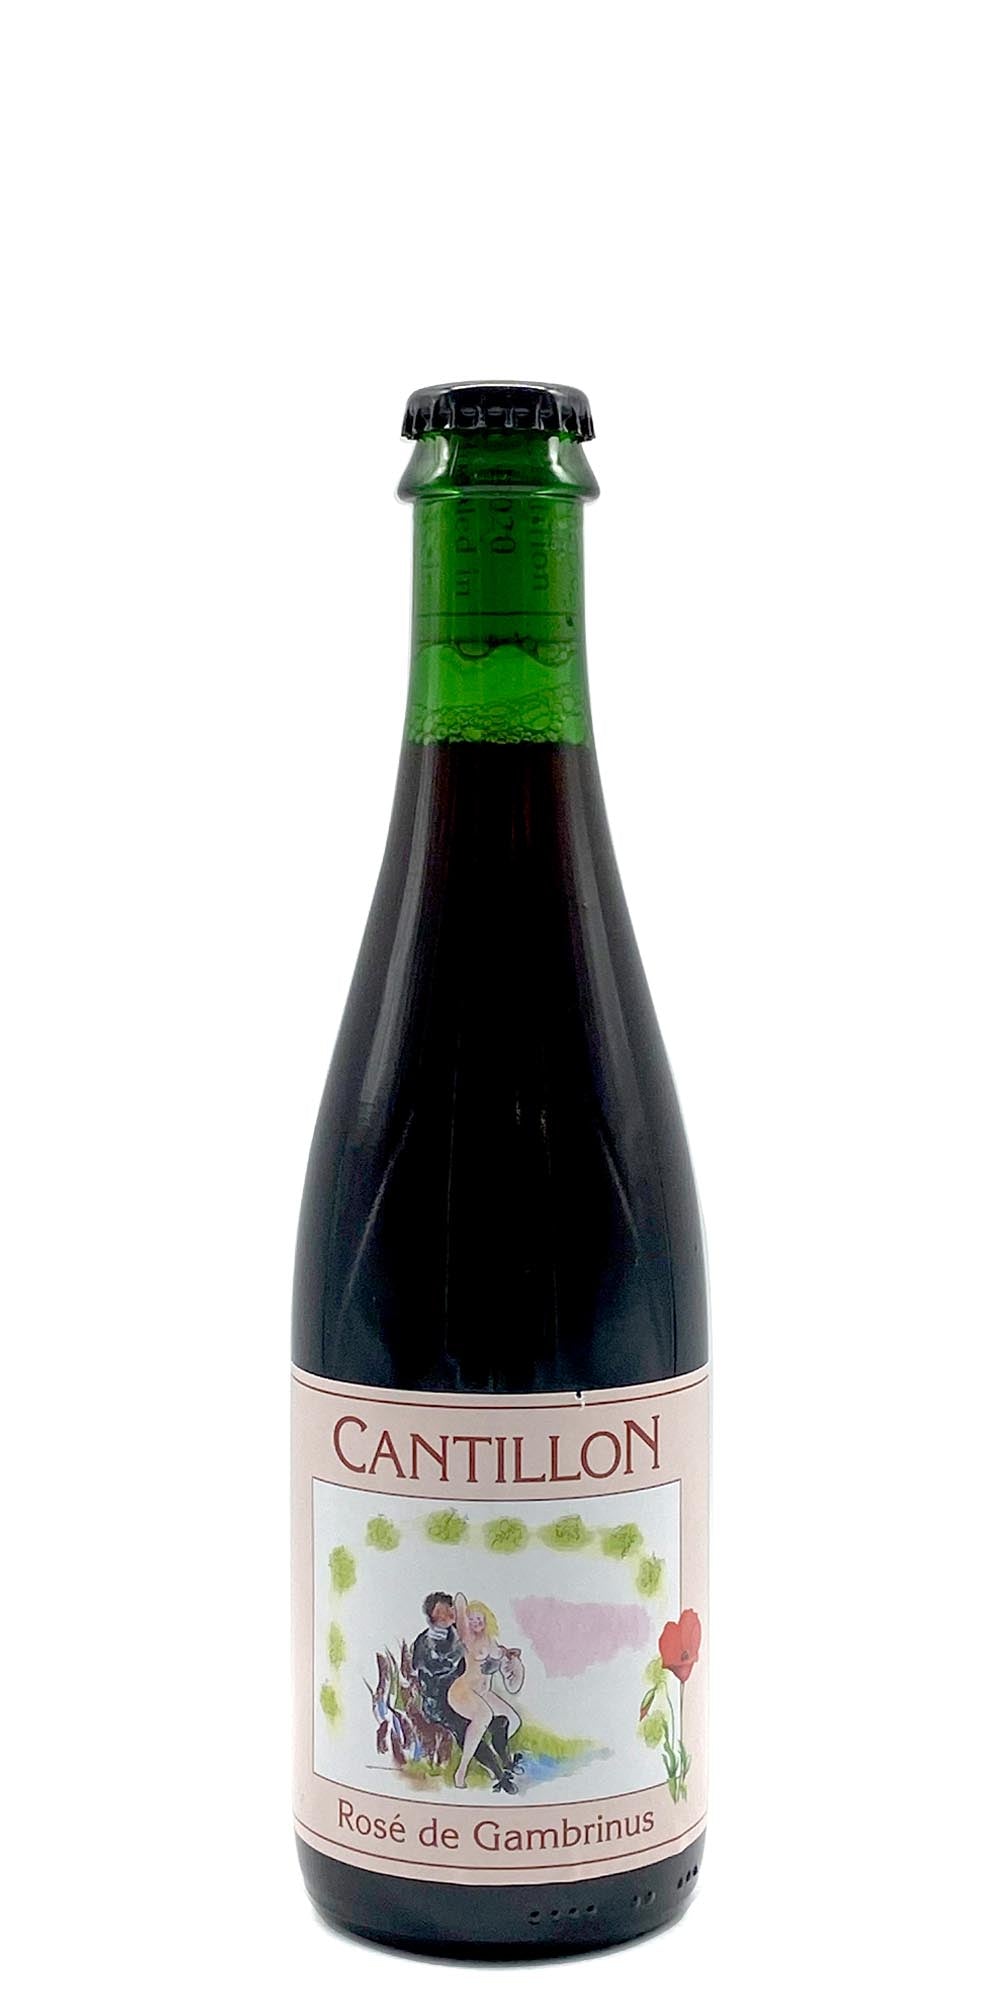 Cantillon - Rose de Gambrinus (2020)